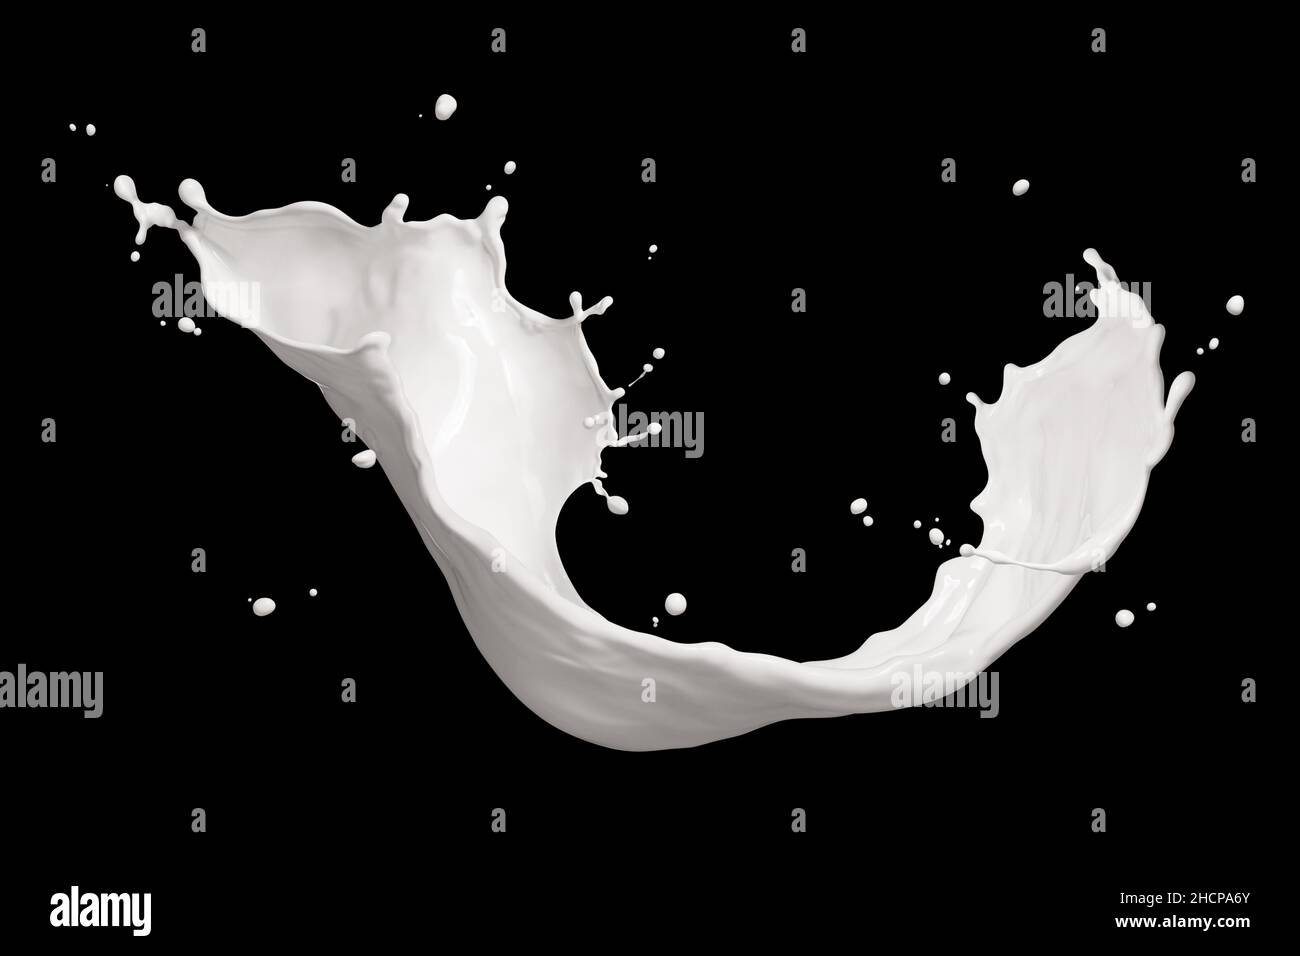 milk splash isolated on black background Stock Photo